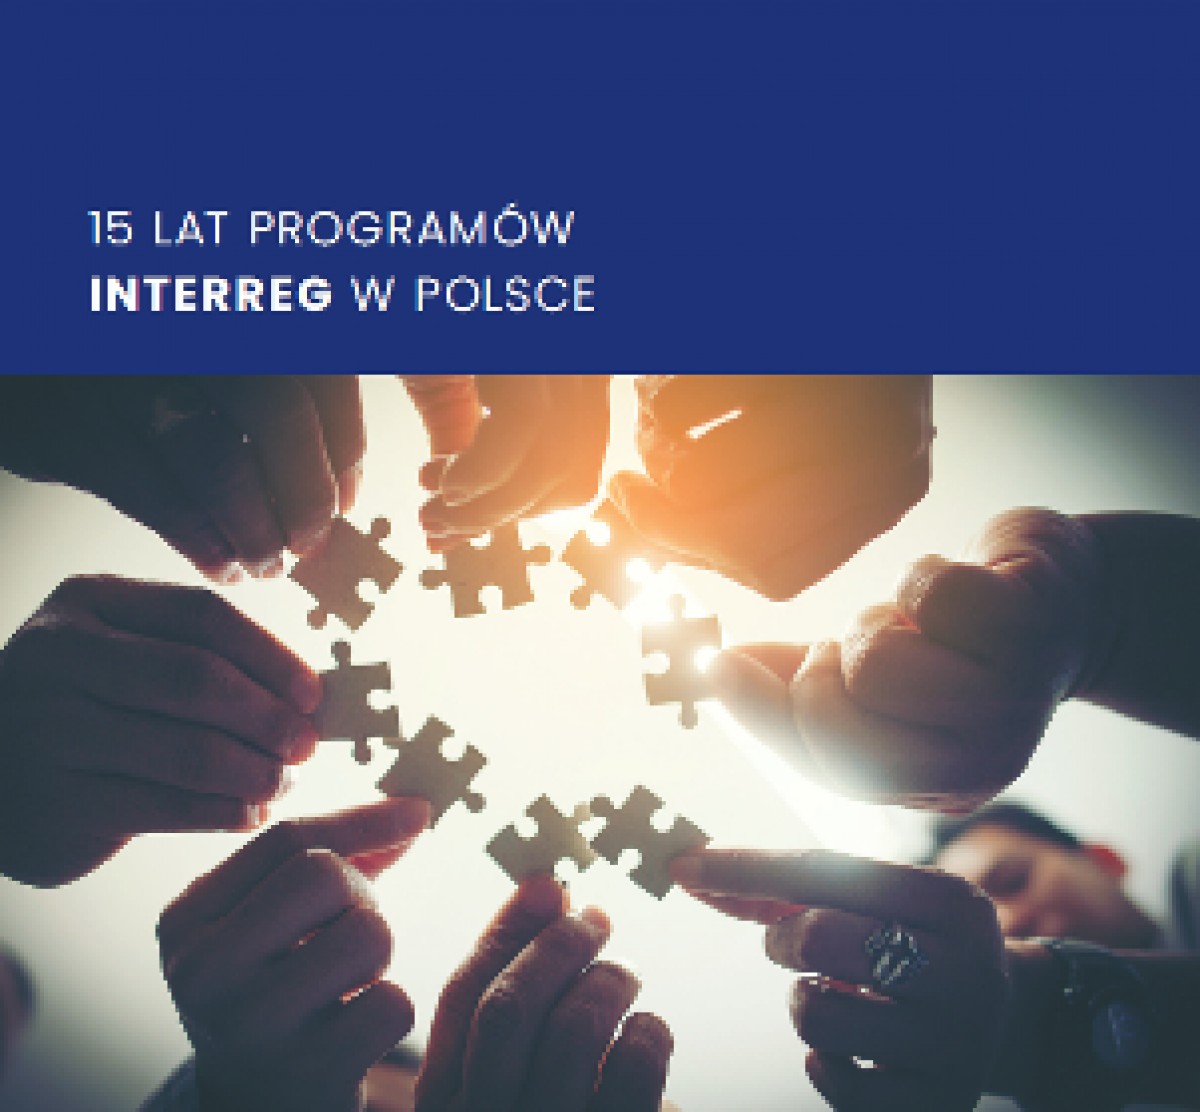 Projekty z Euroregionu "Tatry" w publikacji "15 lat programów Interreg w Polsce"